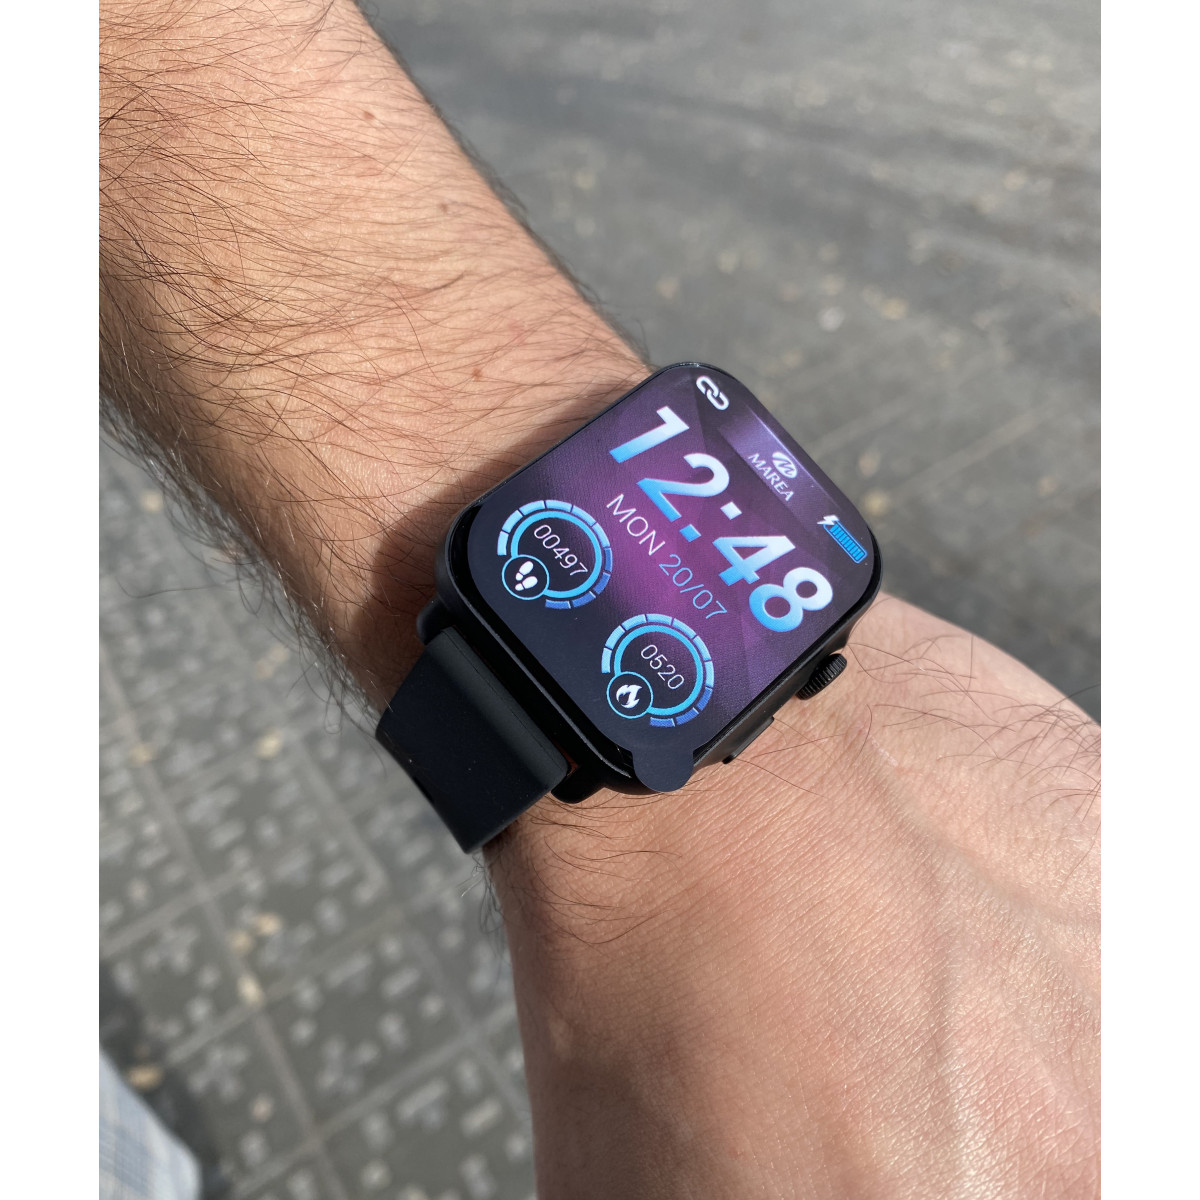 Marea Watches - ¿Ya conoces el nuevo Smart con Bluetooth Talk